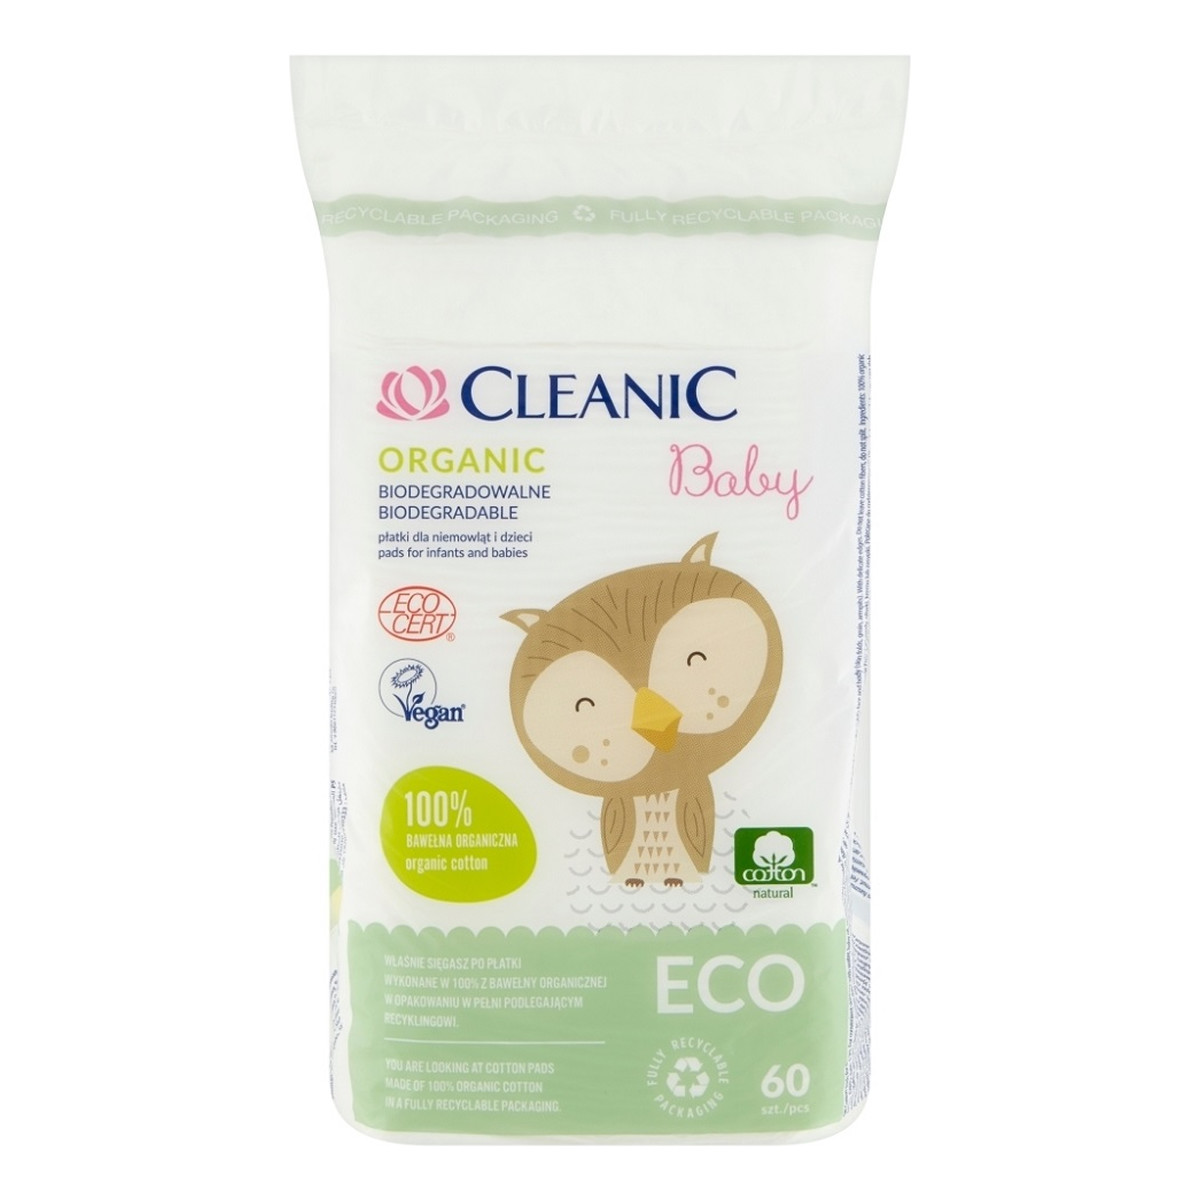 Cleanic Baby Eco Płatki dla niemowląt i dzieci Organic biodegradowalne 1 op. 60 szt.